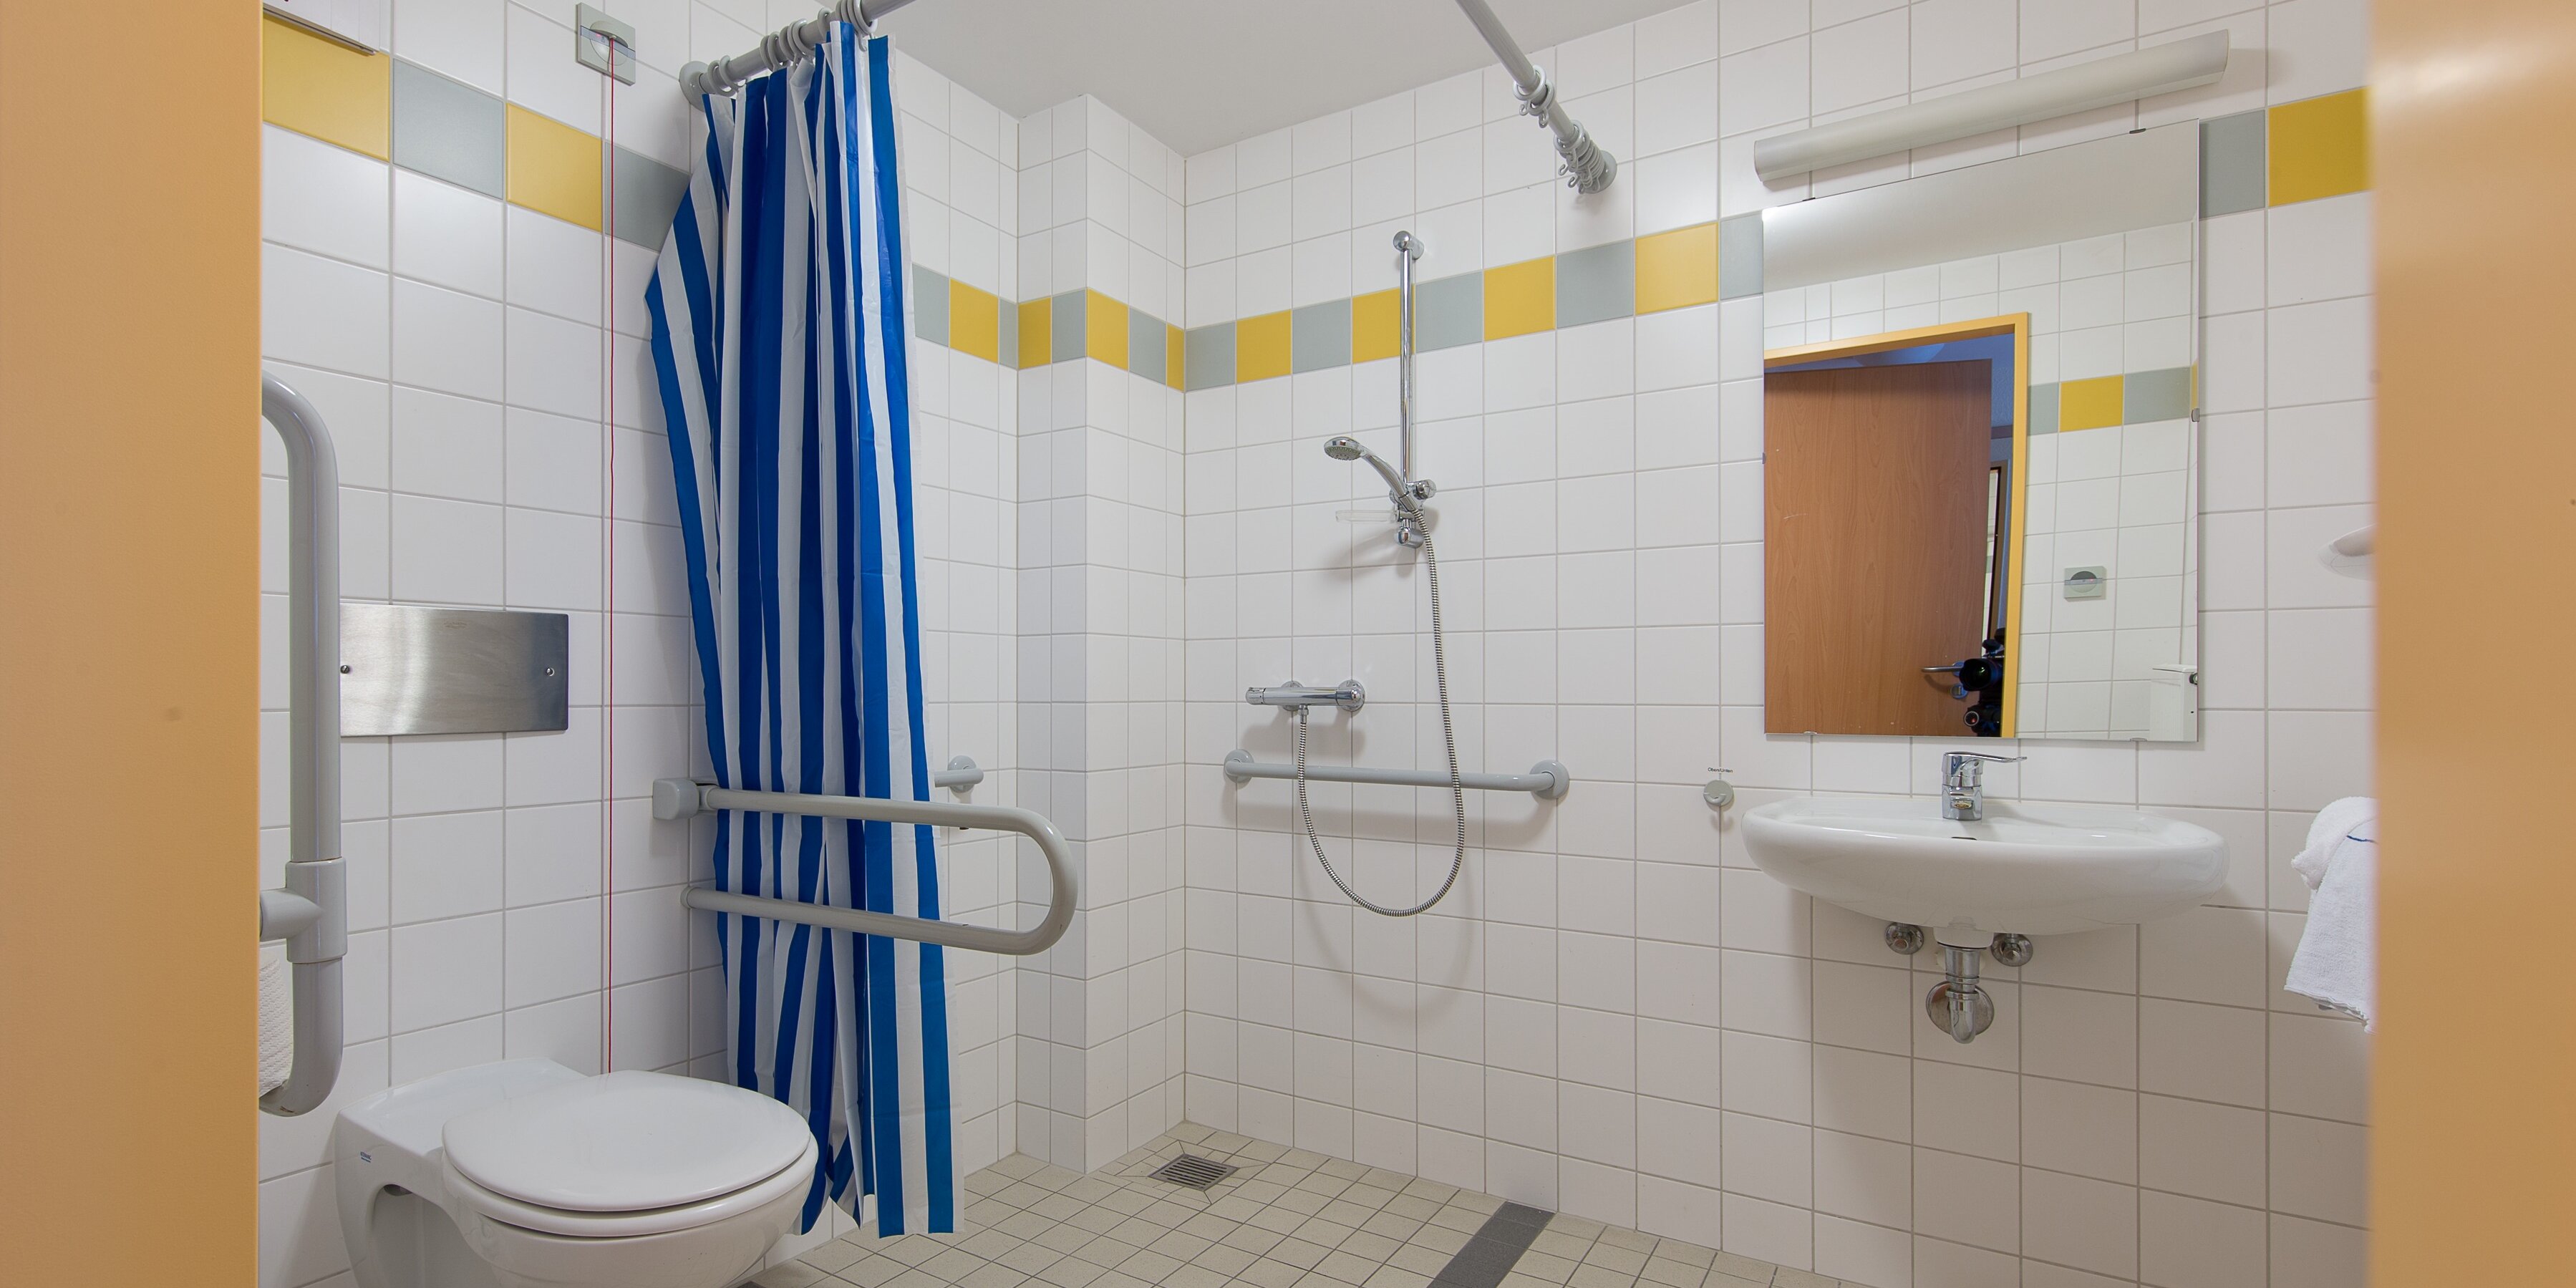 Beispielansicht eines barrierefreien Badezimmers im Haus 1 inklusive Grundausstattung